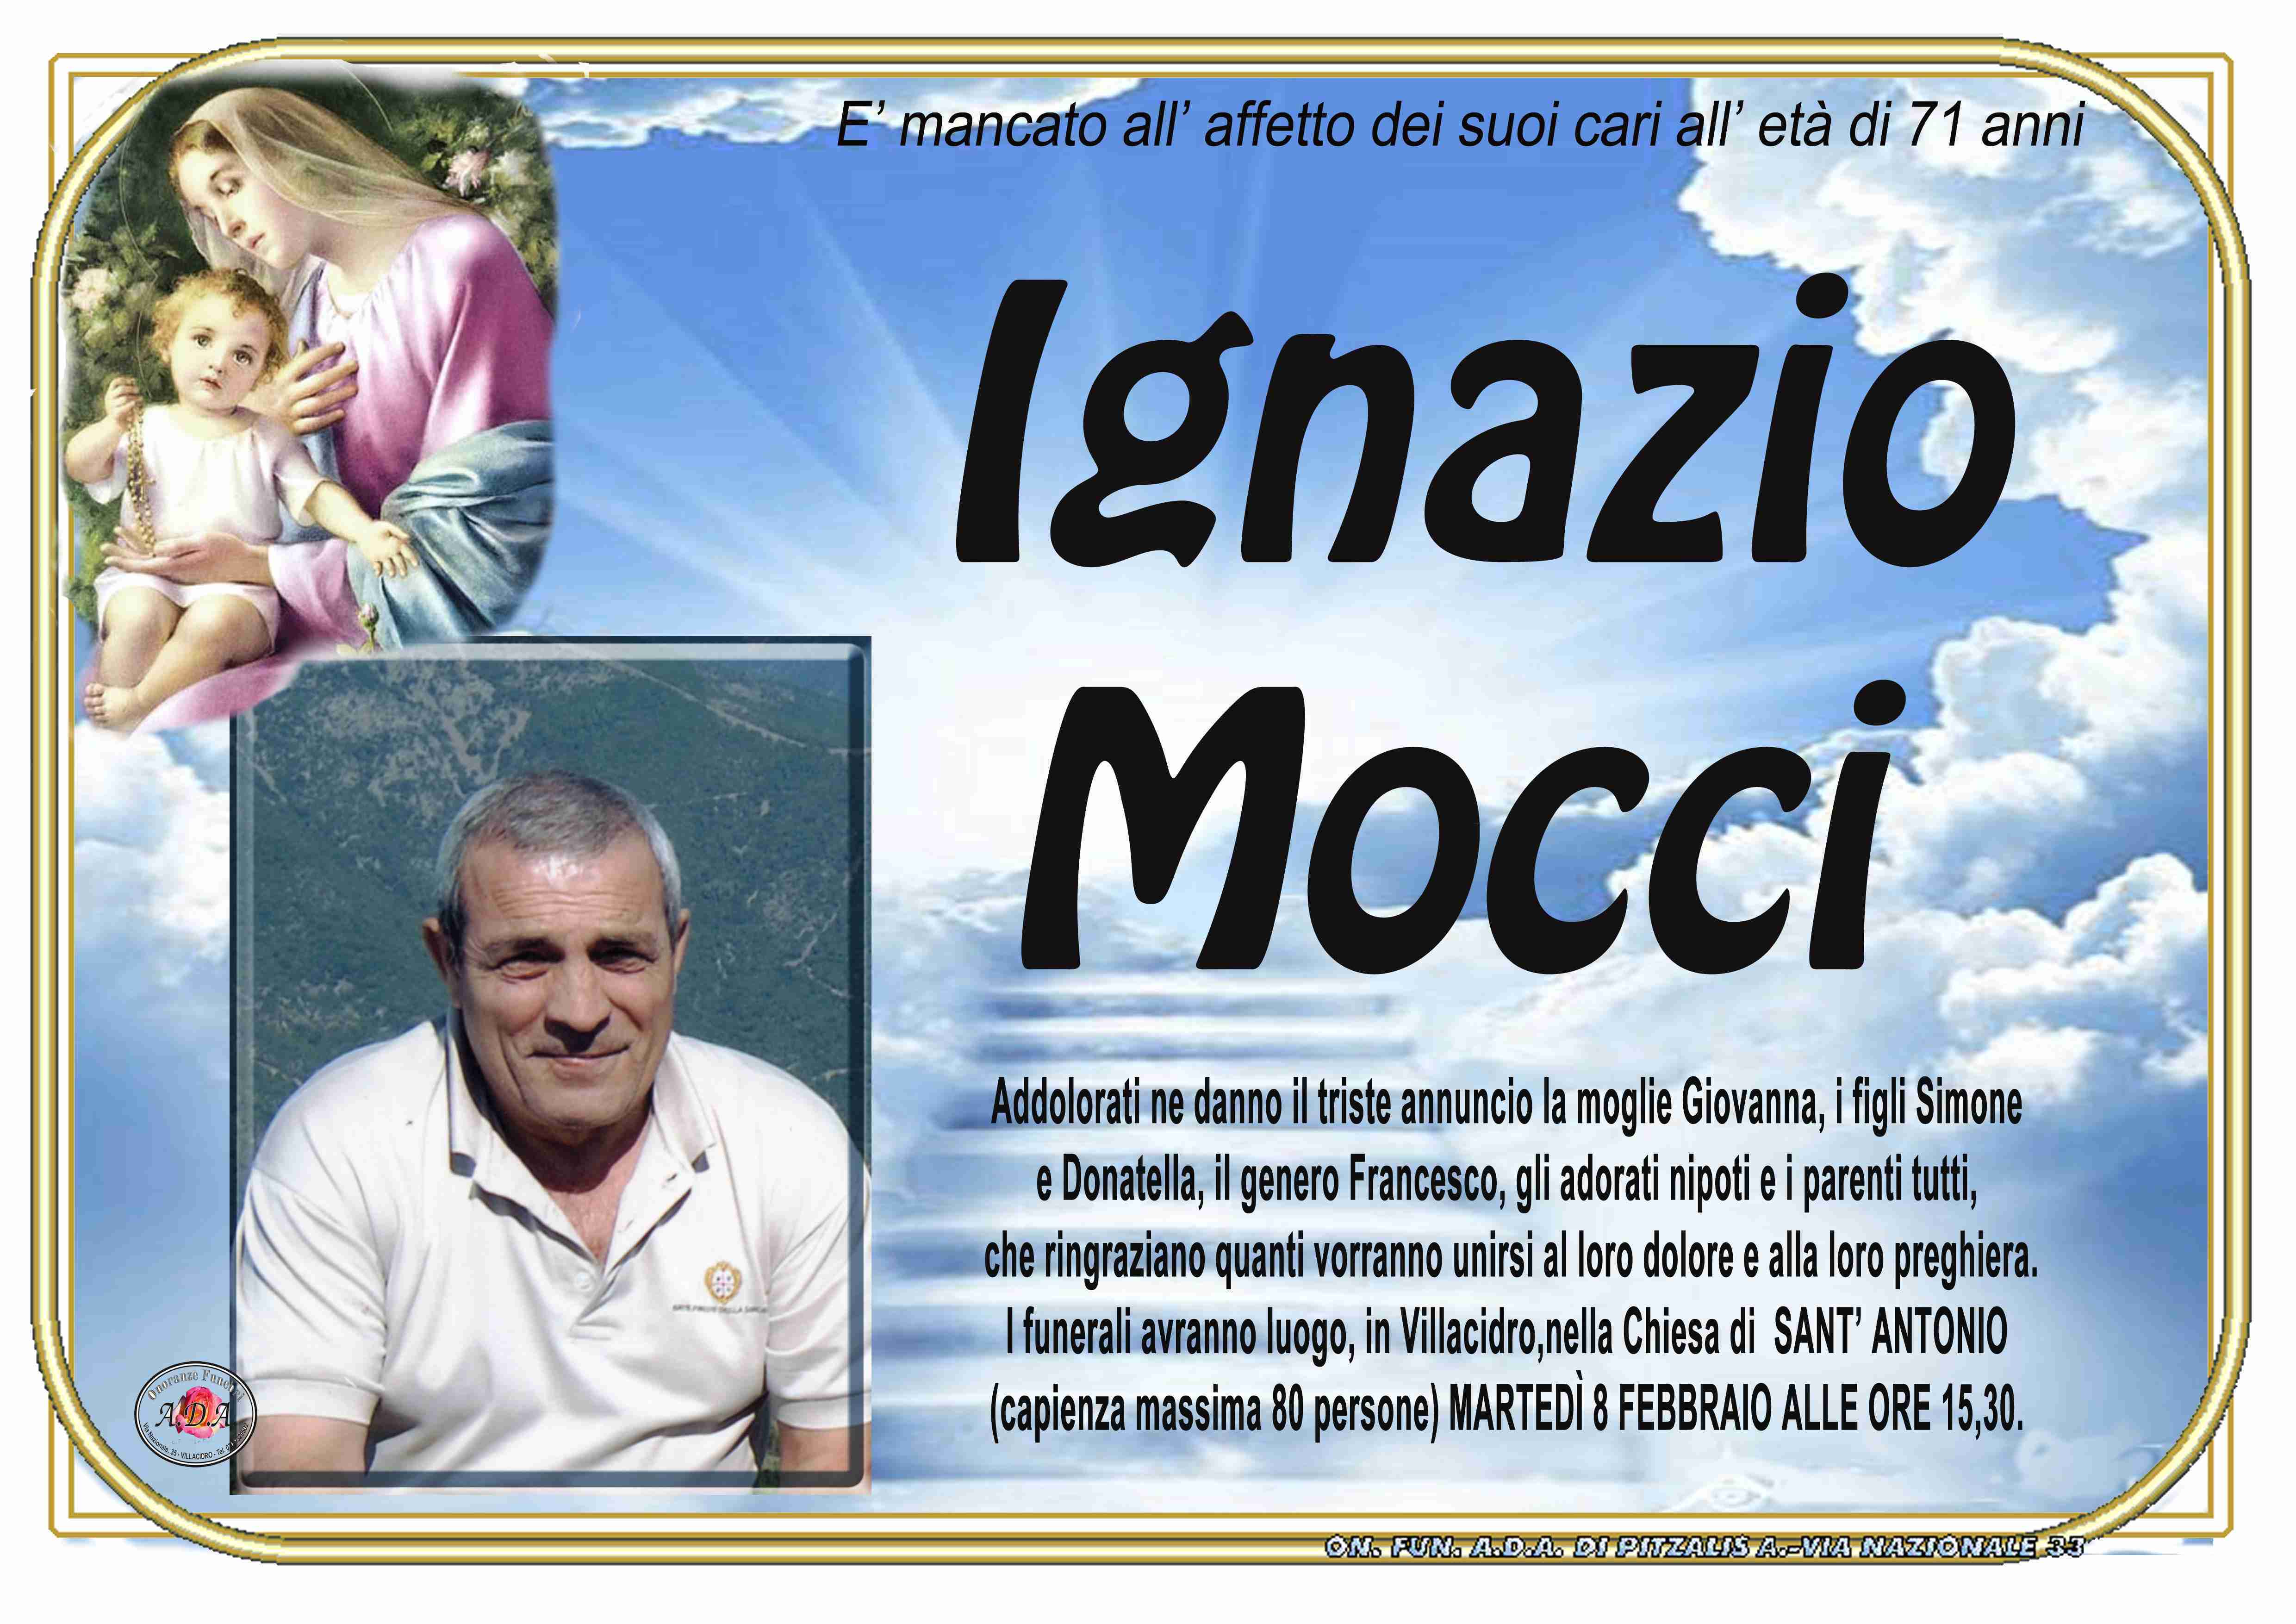 Ignazio Mocci